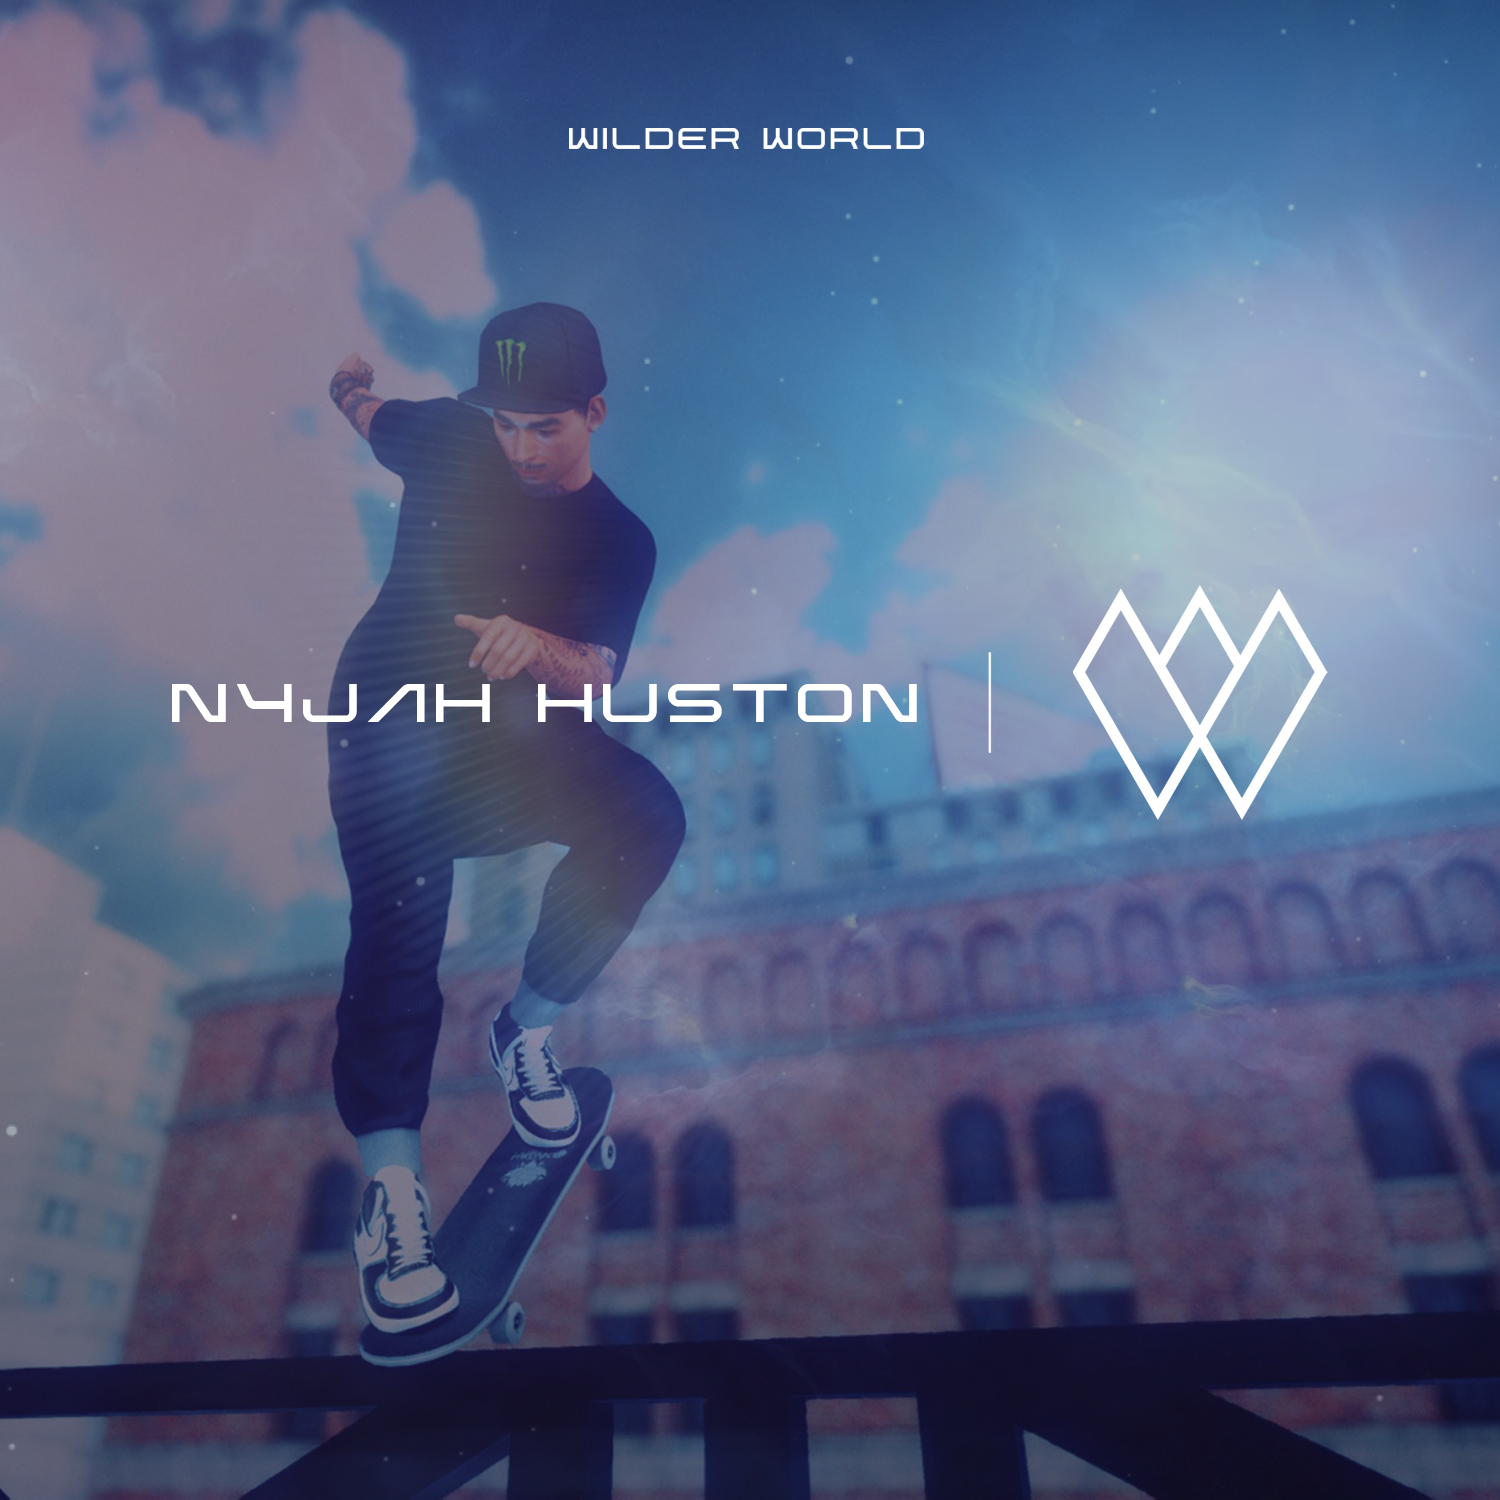 Skateboard whiz-kid and Olympic star Nyjah Huston, lands stake in Wilder World Metaverse